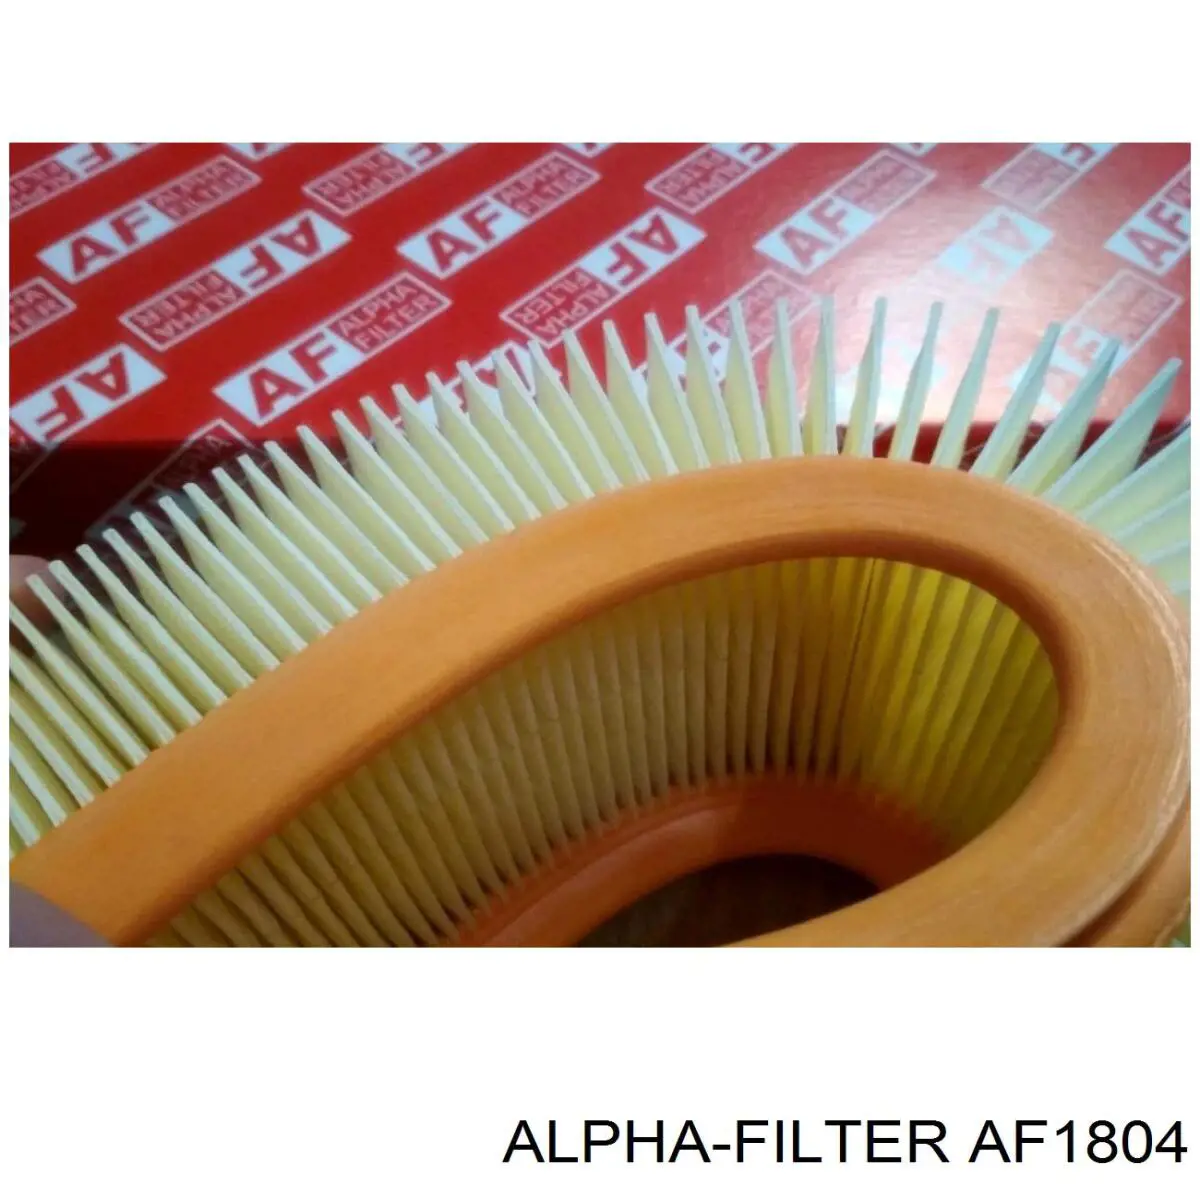 AF1804 Alpha-filter воздушный фильтр